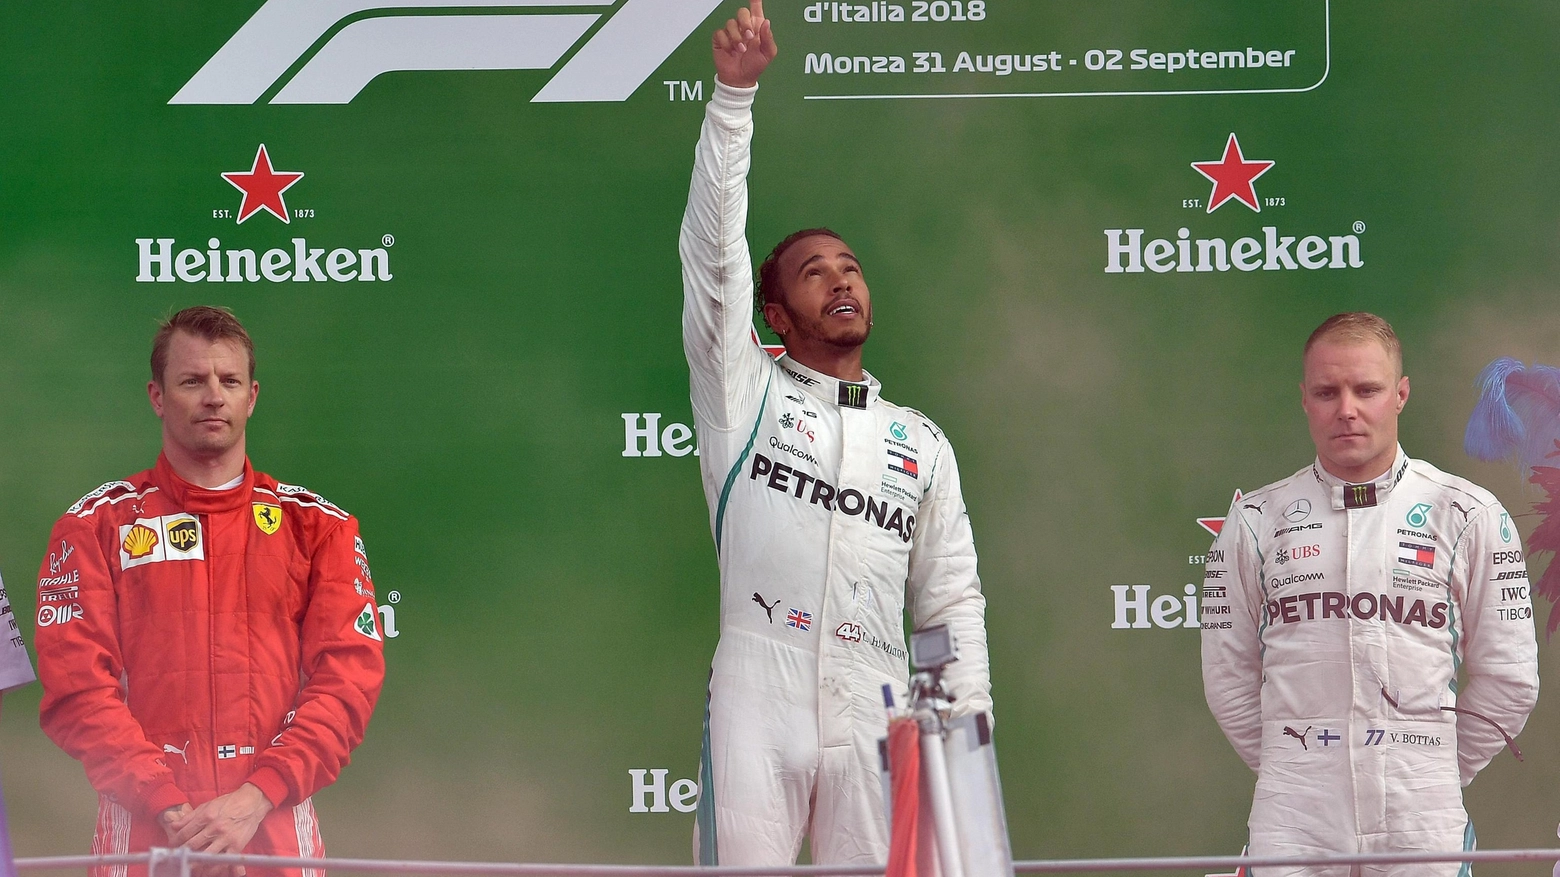 Il podio di Monza: Hamilton primo, Raikkonen secondo, Bottas terzo